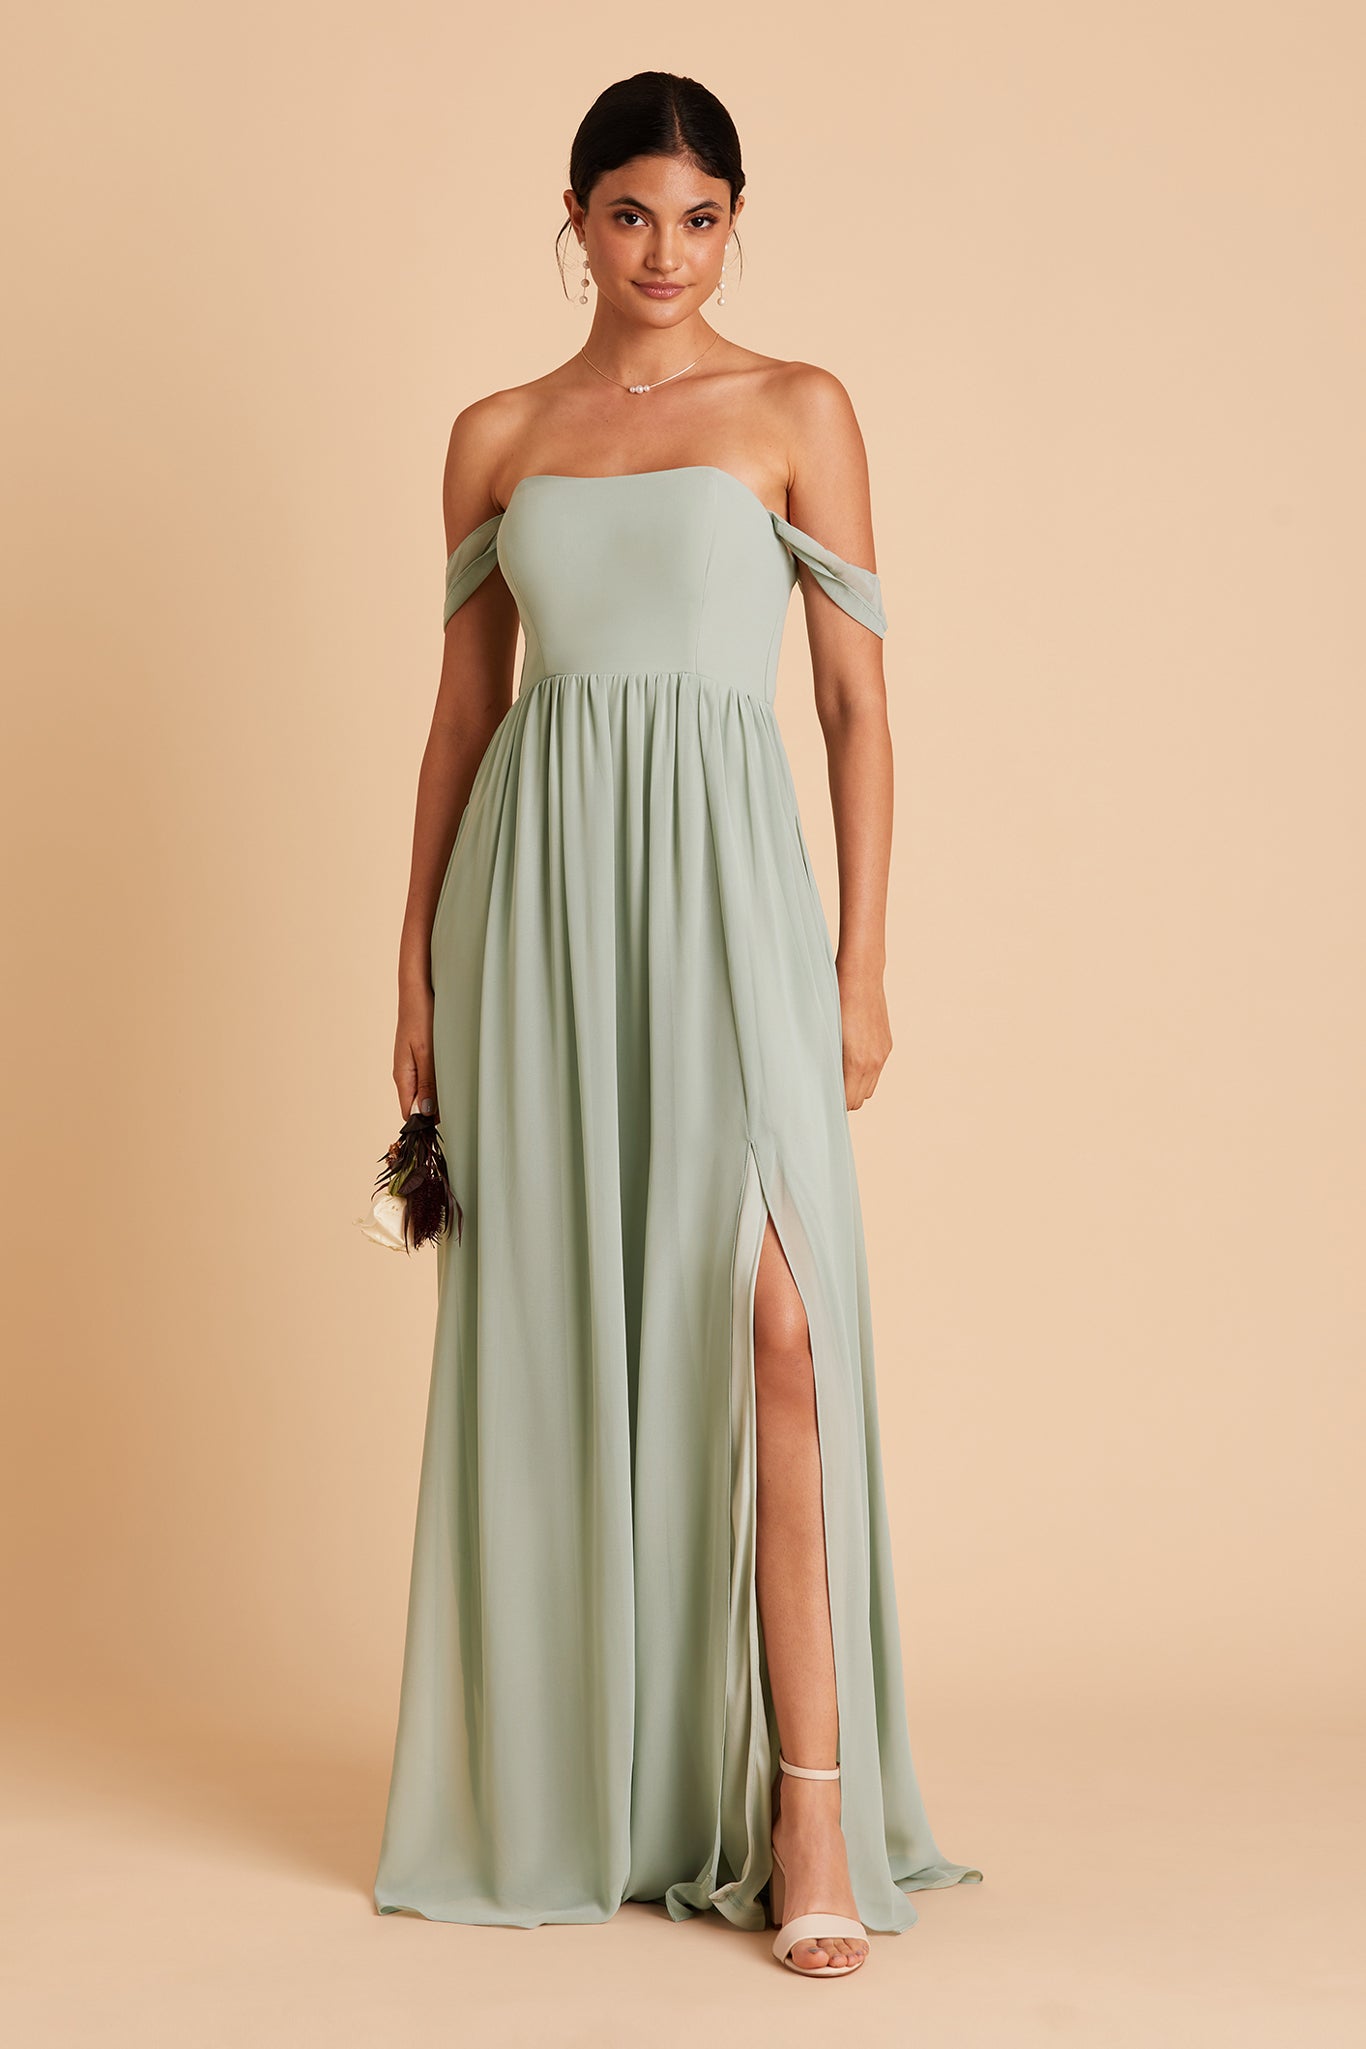 Women's Infinity Dress, Womens Wrap Dress, Convertible Summer Dress -  Bridesmaid Dress, Prom Dress, One Size